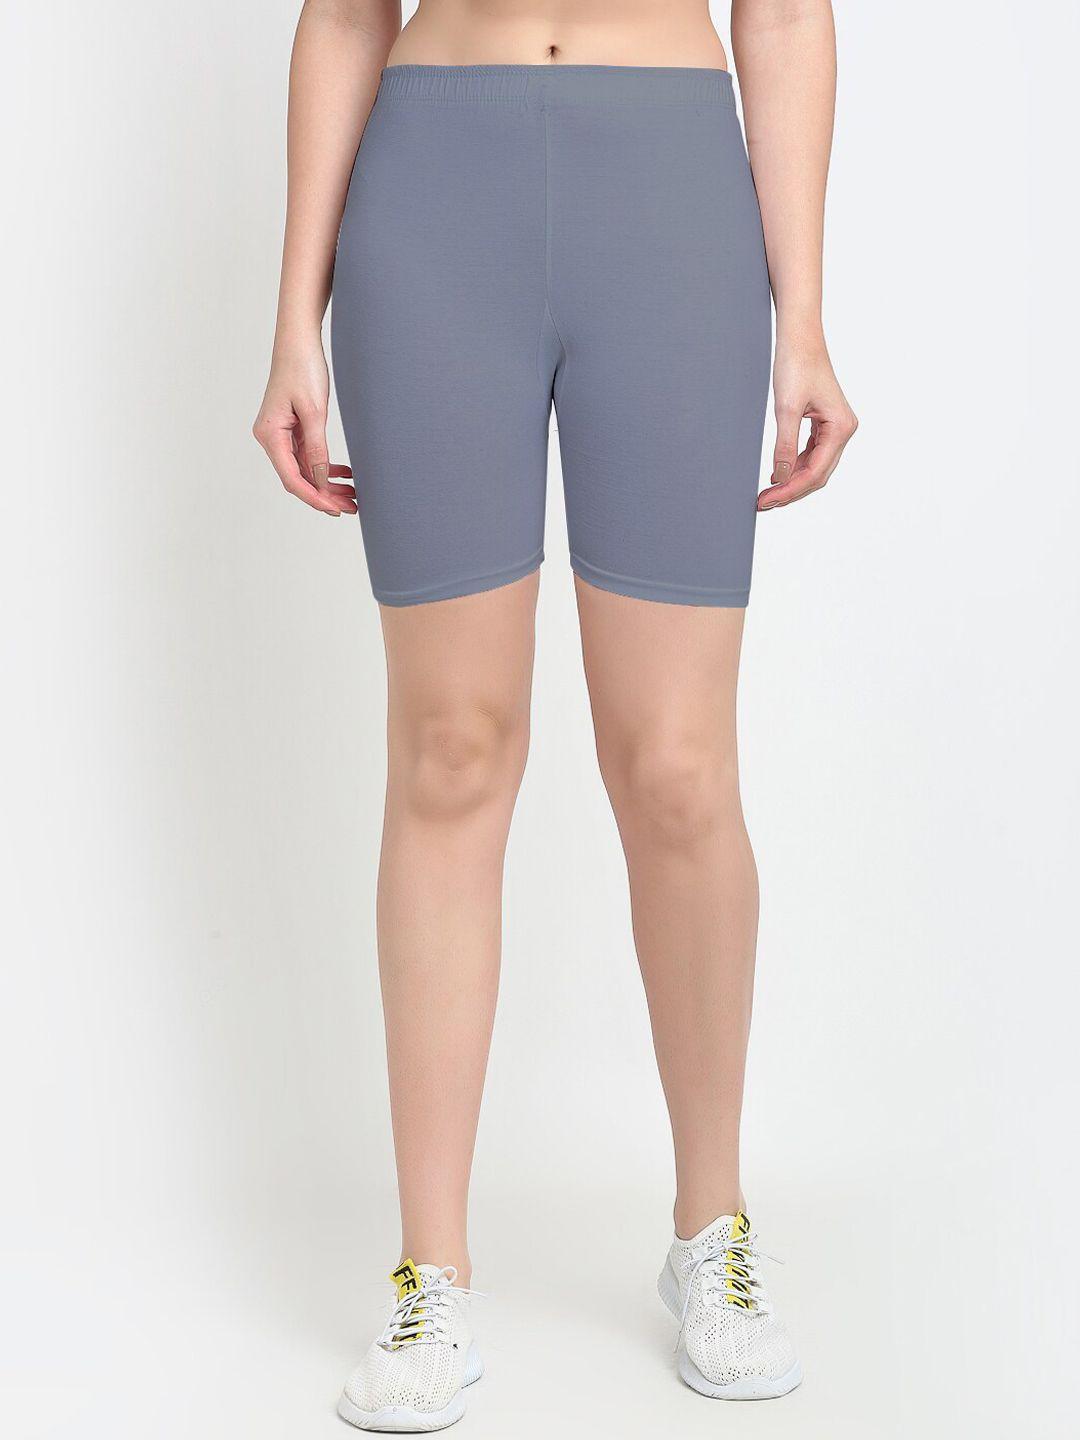 jinfo women grey cycling sports shorts